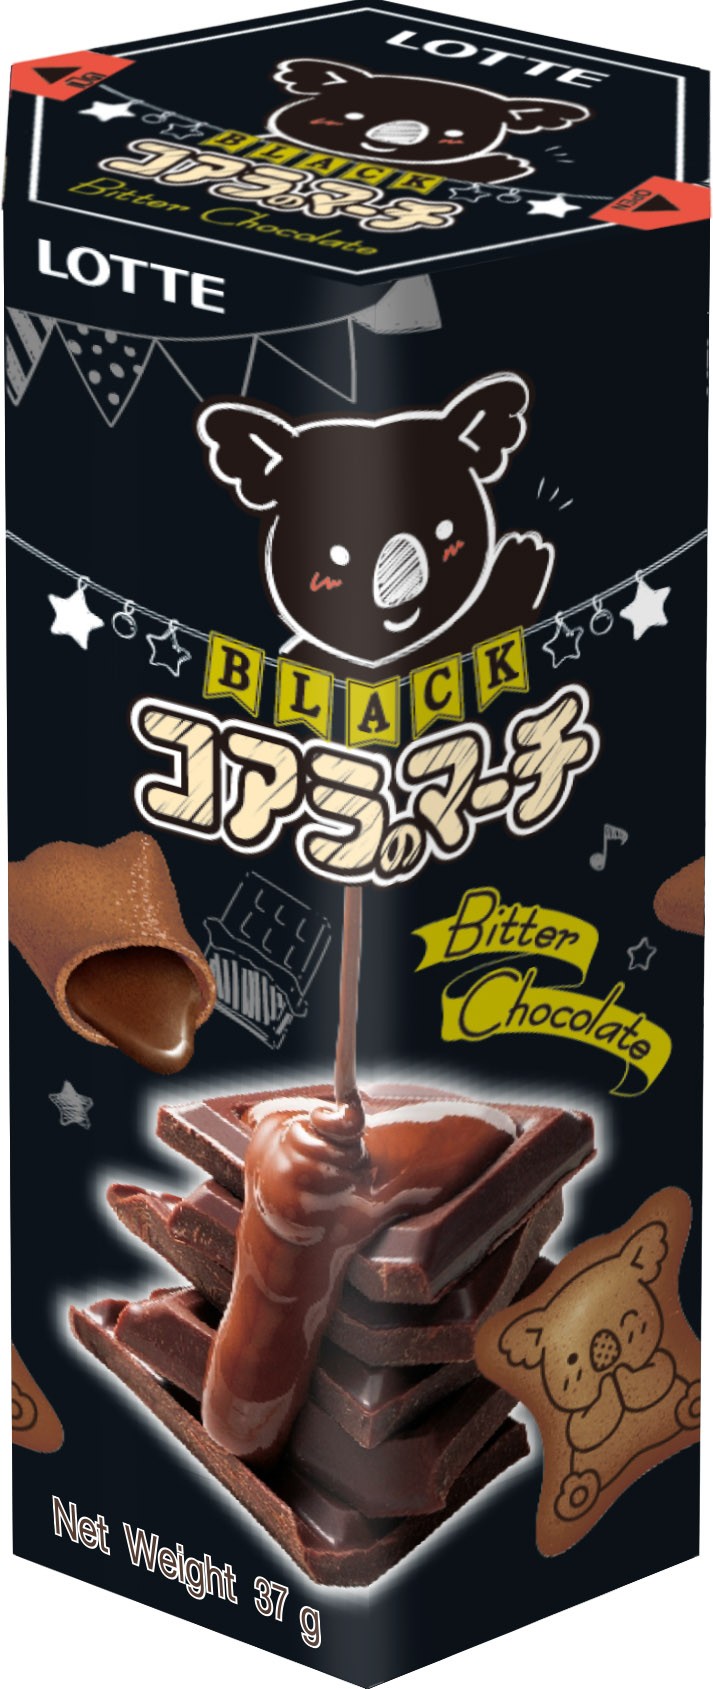  樂天小熊餅乾 濃黑巧克力 37G